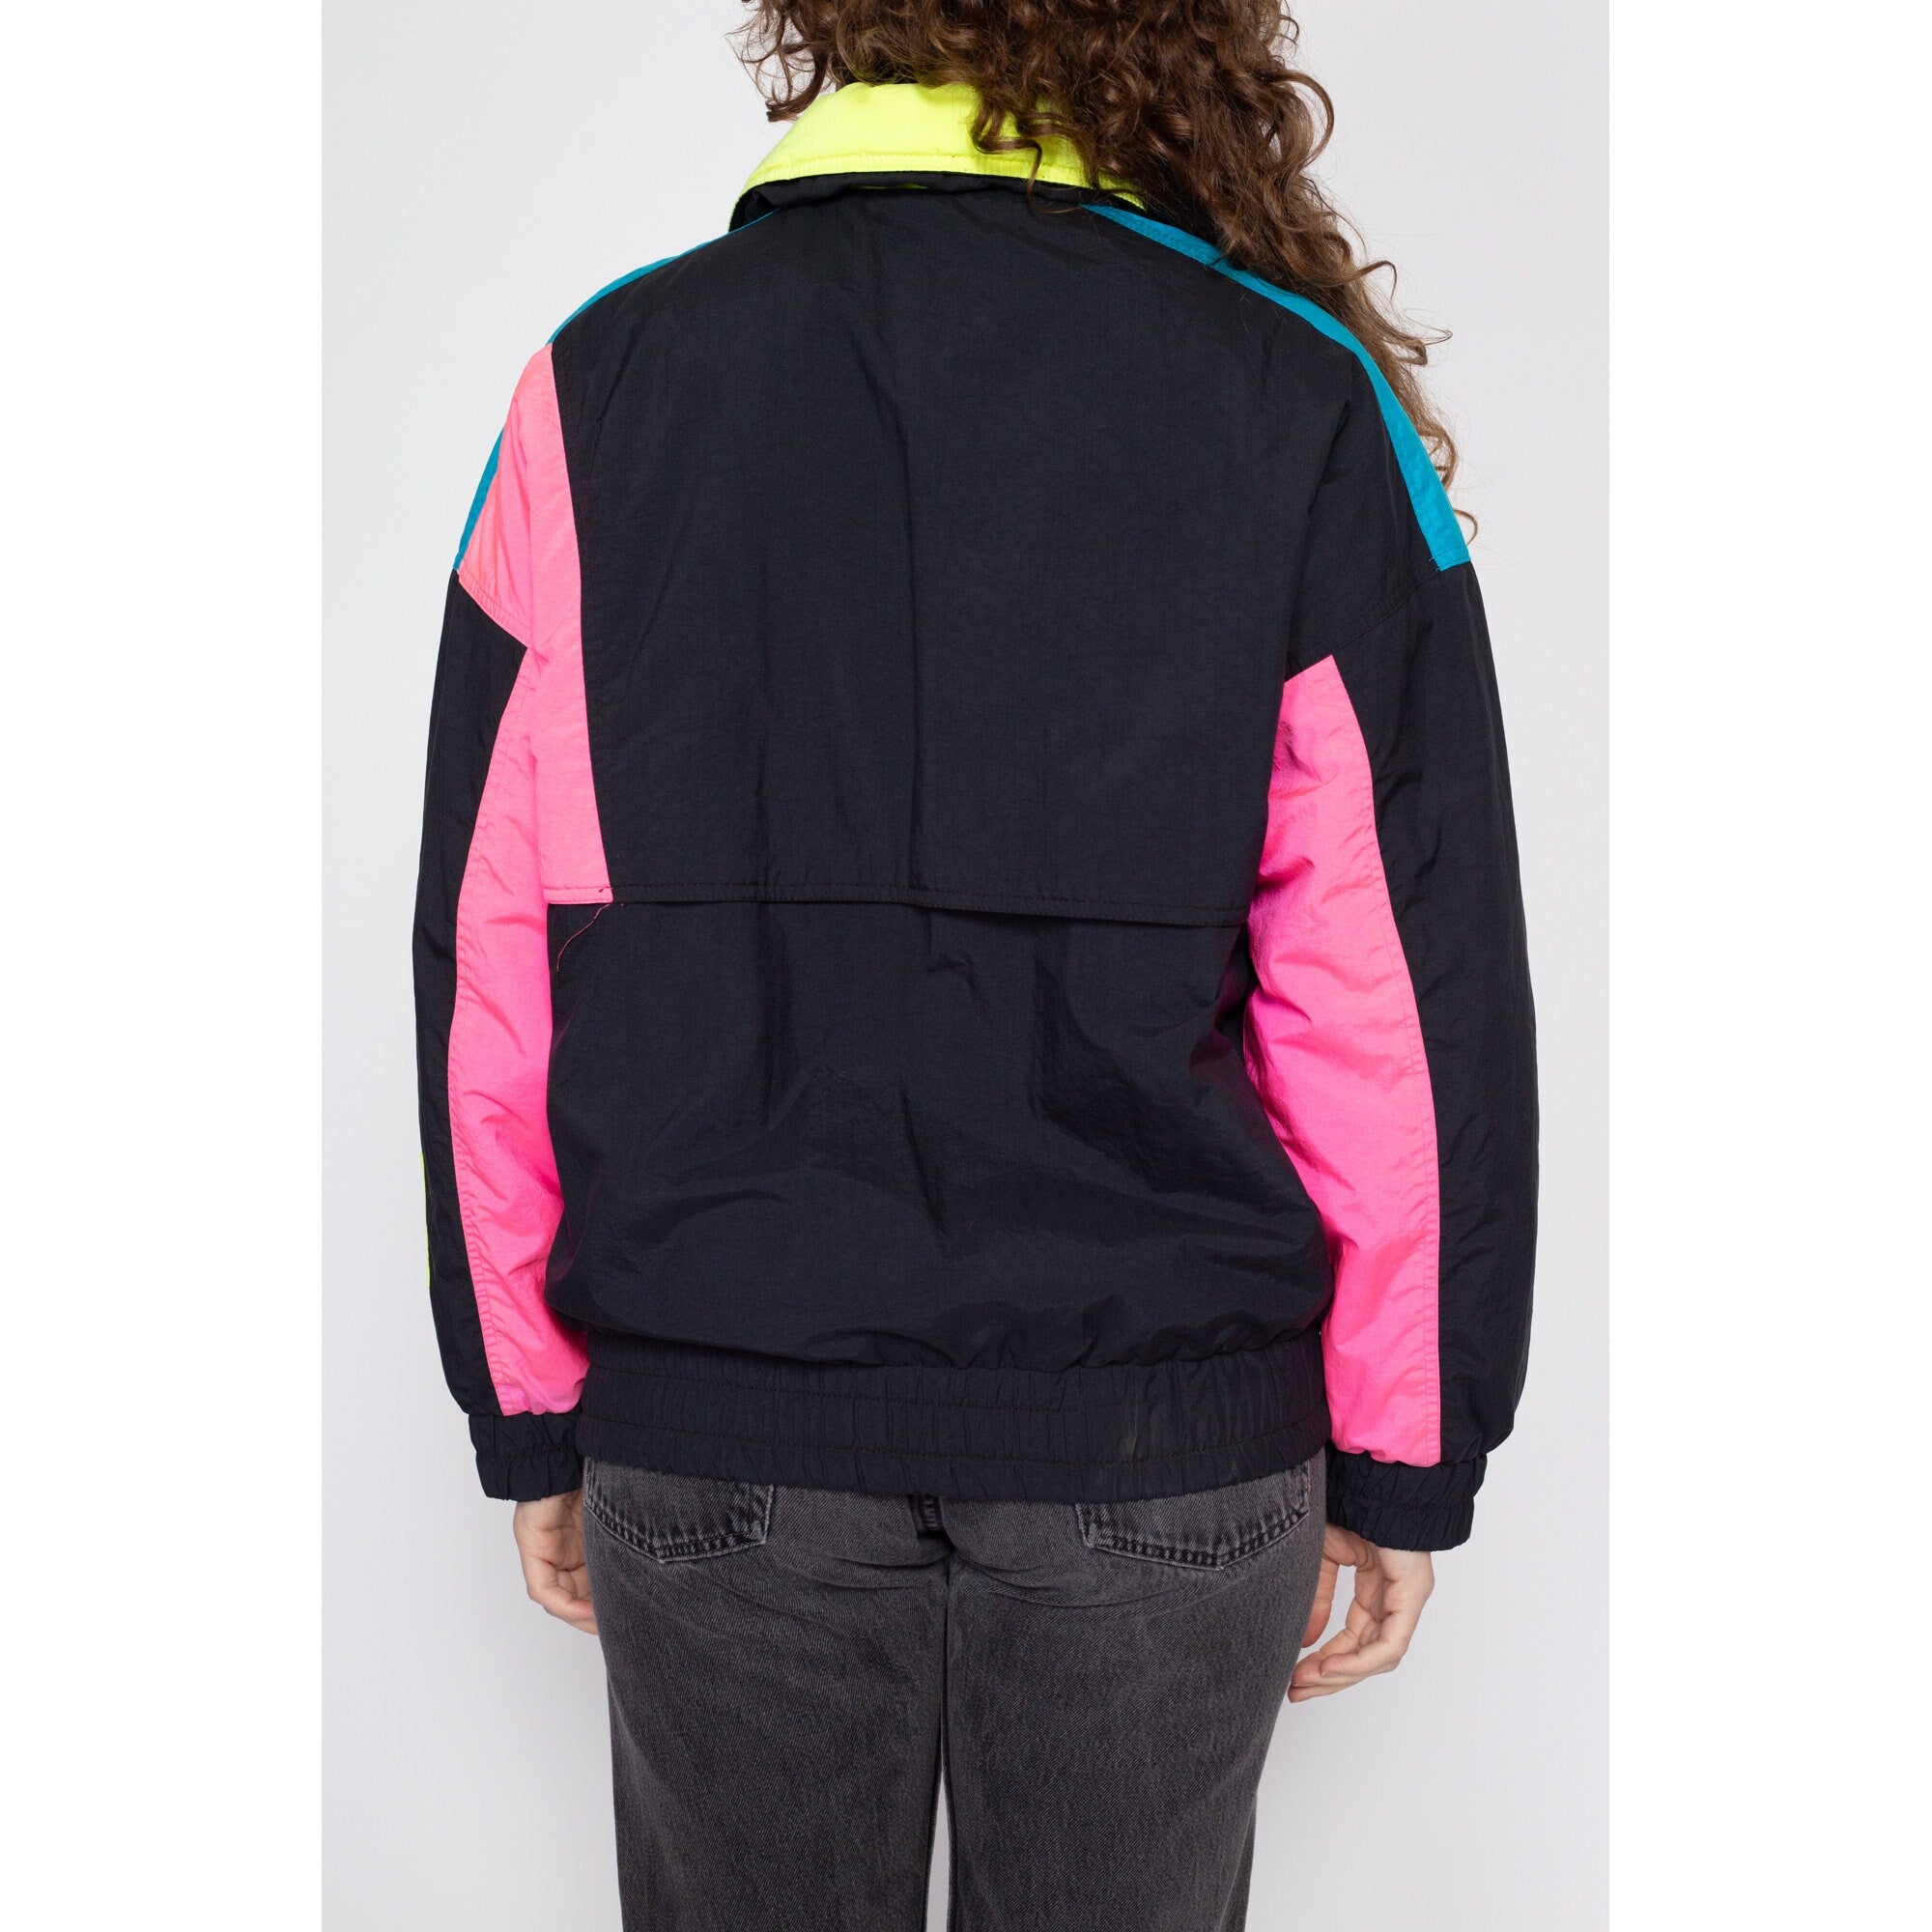 XL 80s Neon Color Block Ski Jacket – Flying Apple Vintage